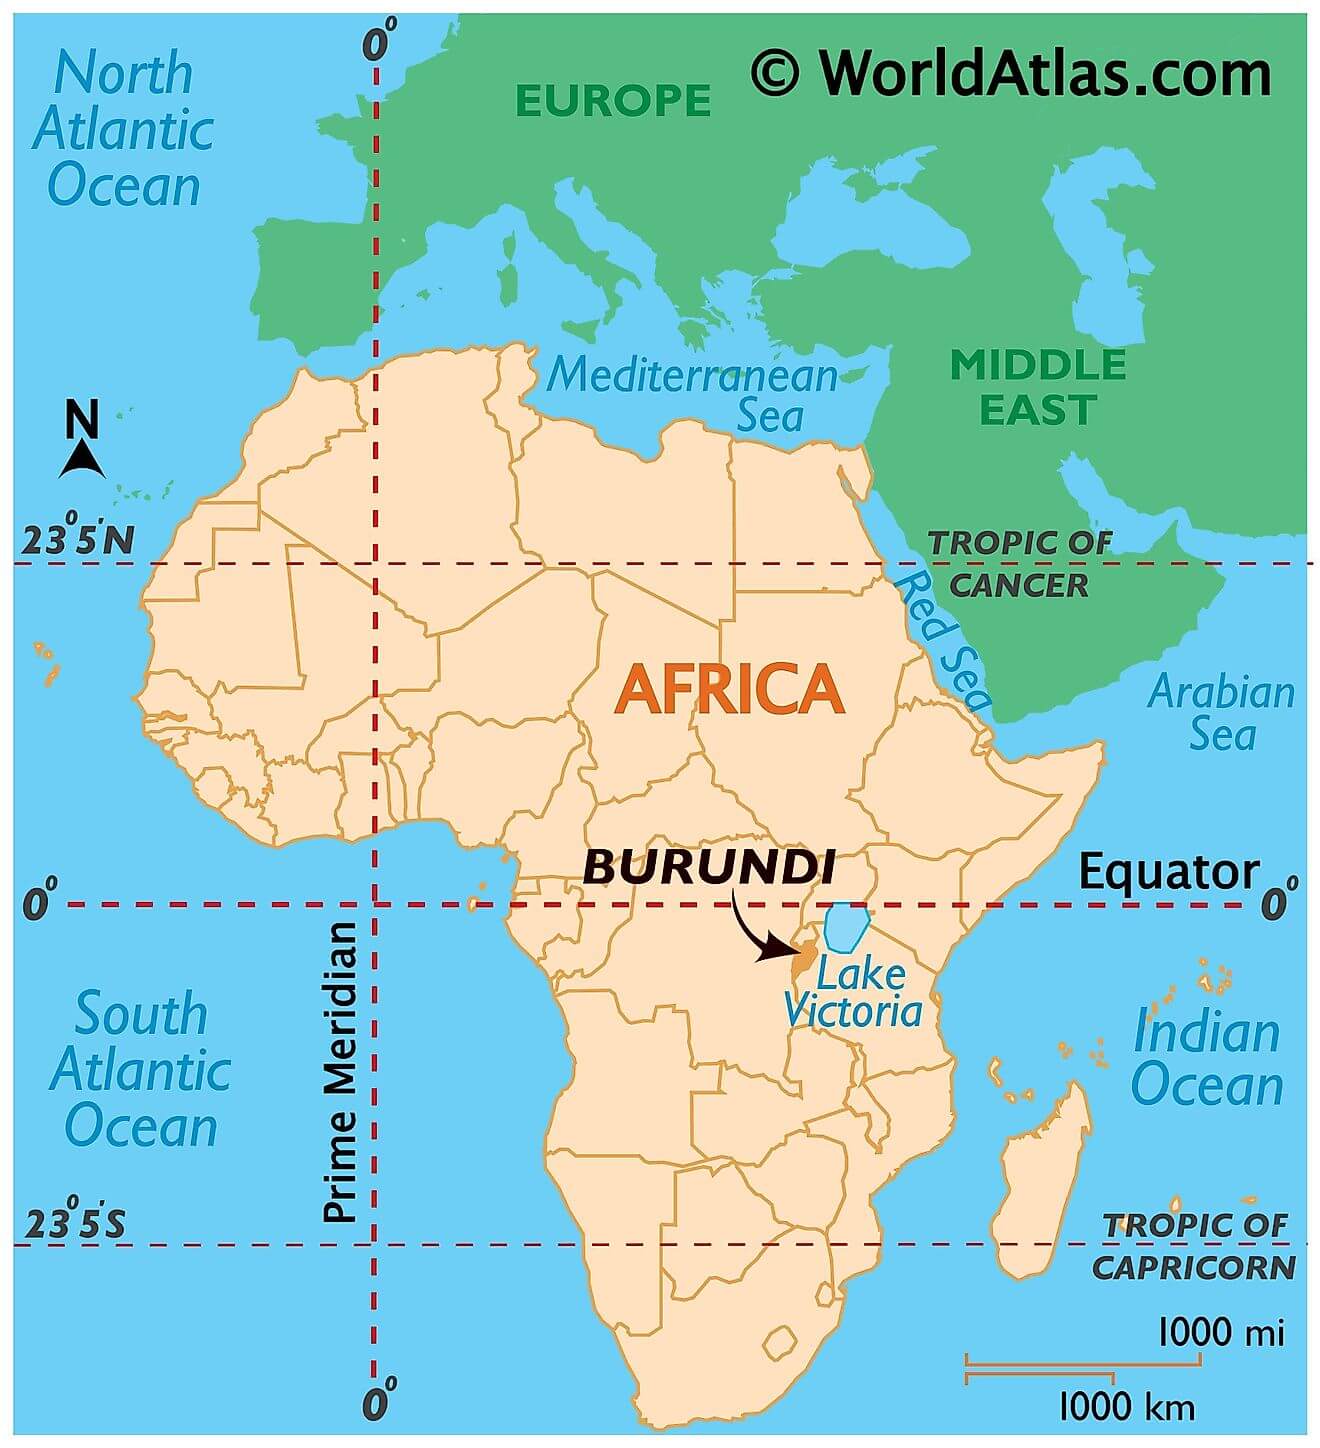 Where is Burundi?